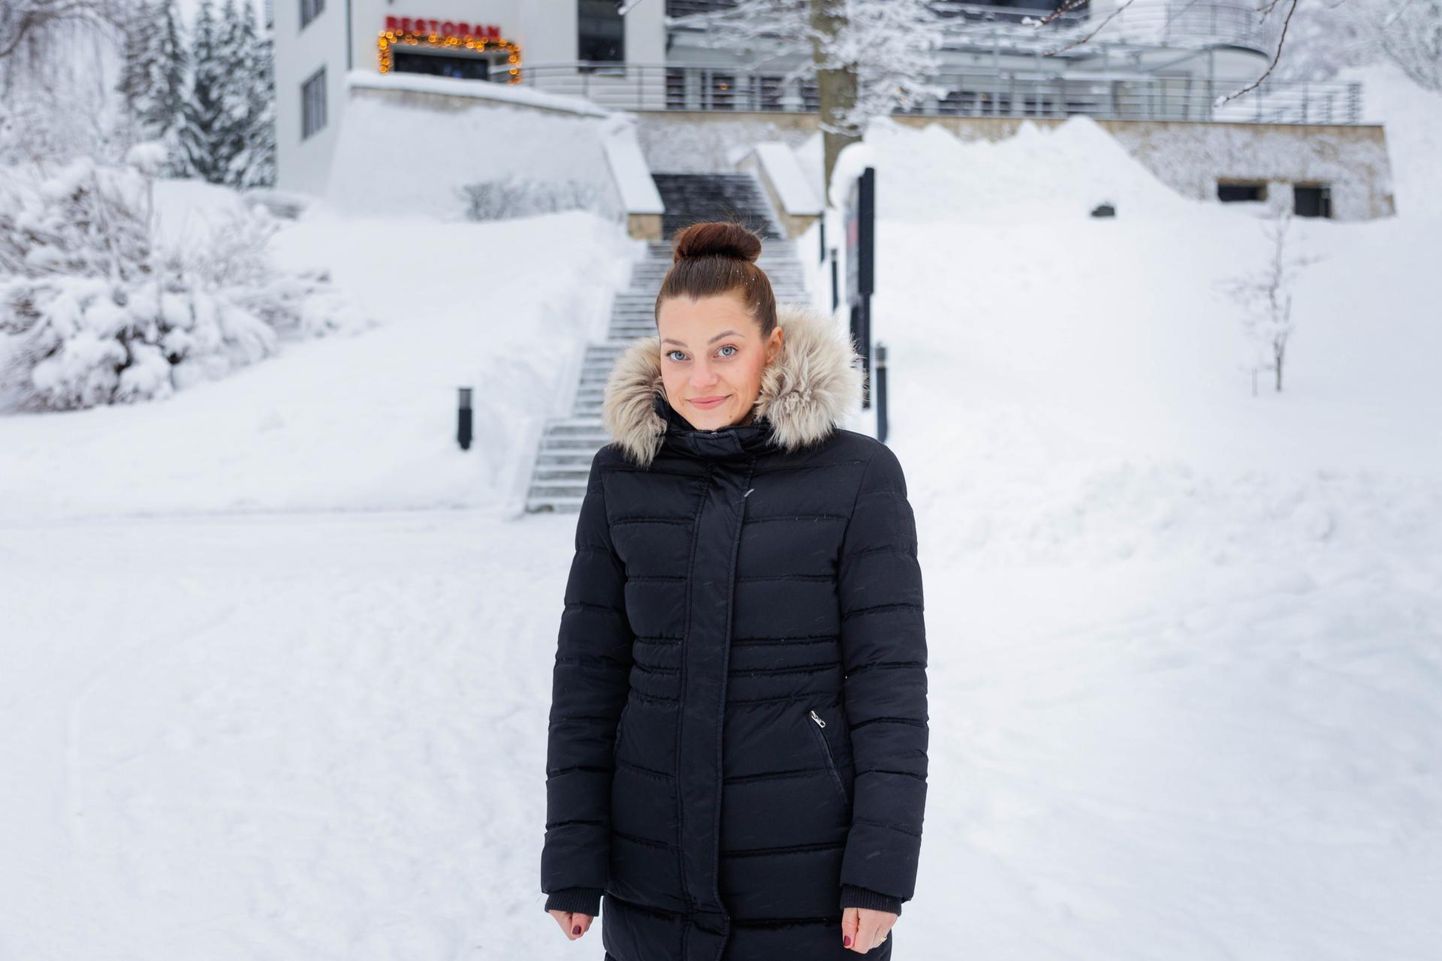 GMP Clubhoteli juhataja Maarja Salloki kinnitusel on lumerohkus toonud kliente juurde. Kohe hotelli juurest pääseb ka suusaradadele.